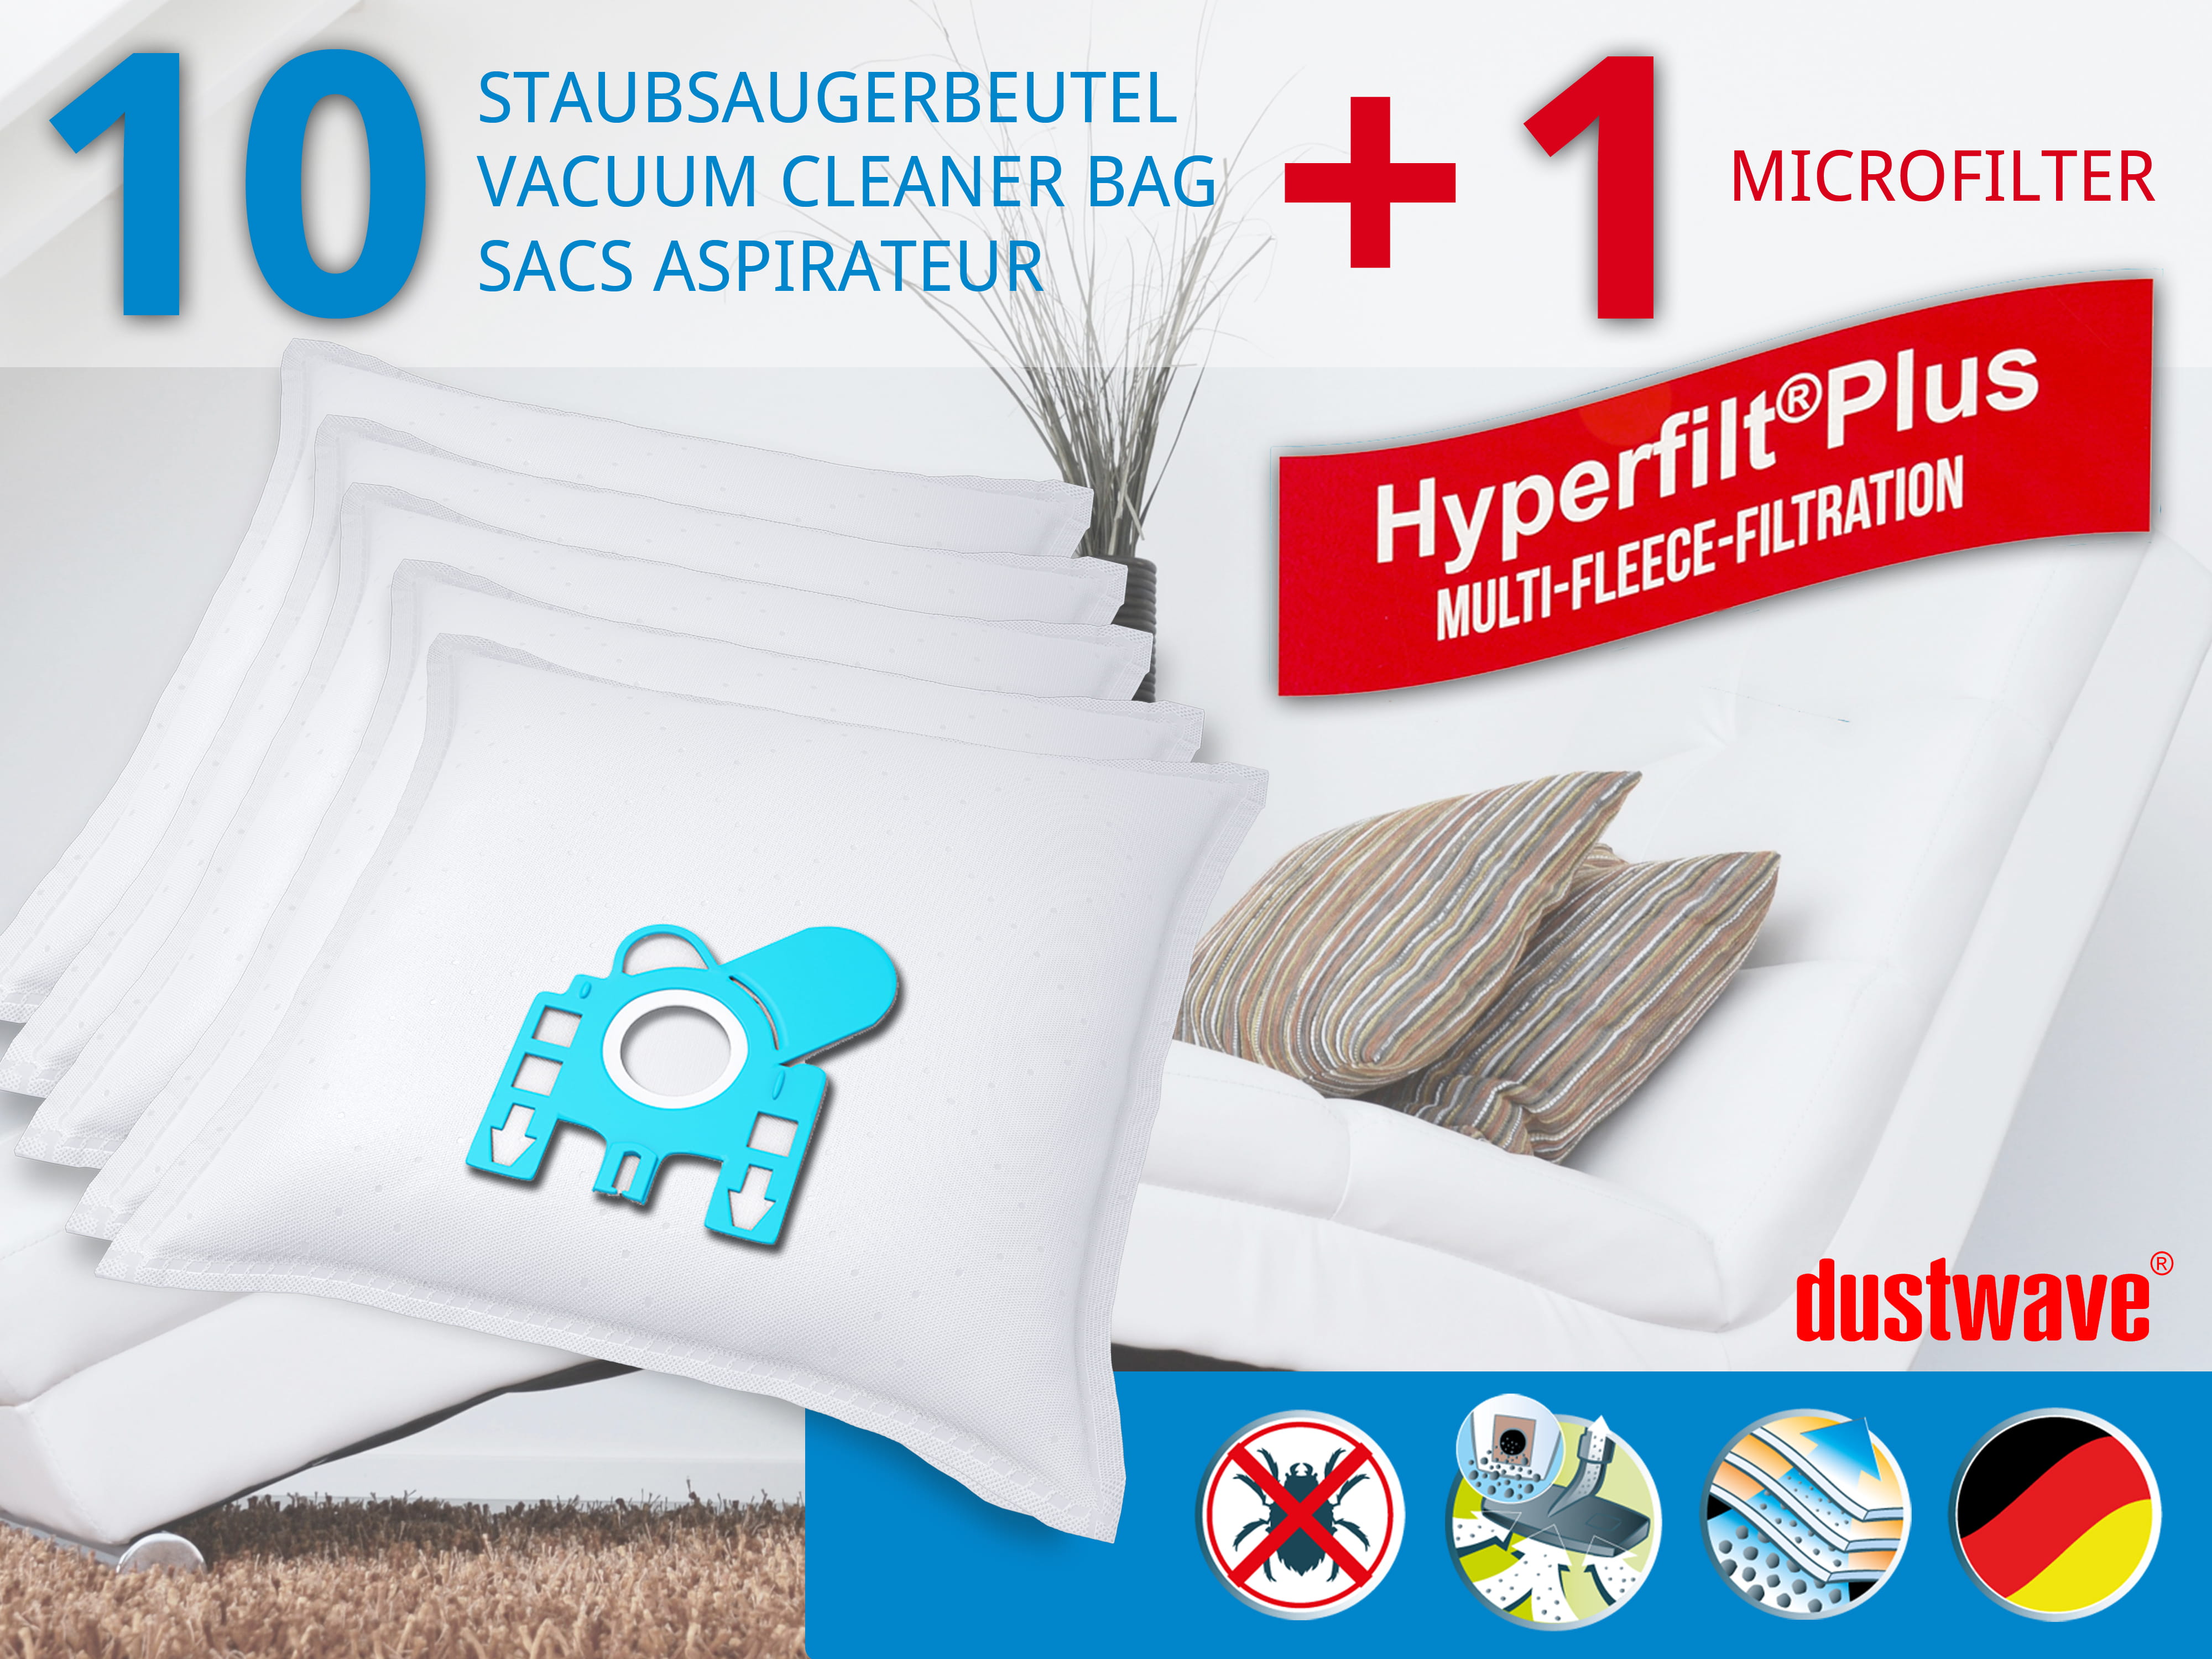 Dustwave® 10 Staubsaugerbeutel für Hoover TFB2012 021 FreeMotion - hocheffizient, mehrlagiges Mikrovlies mit Hygieneverschluss - Made in Germany